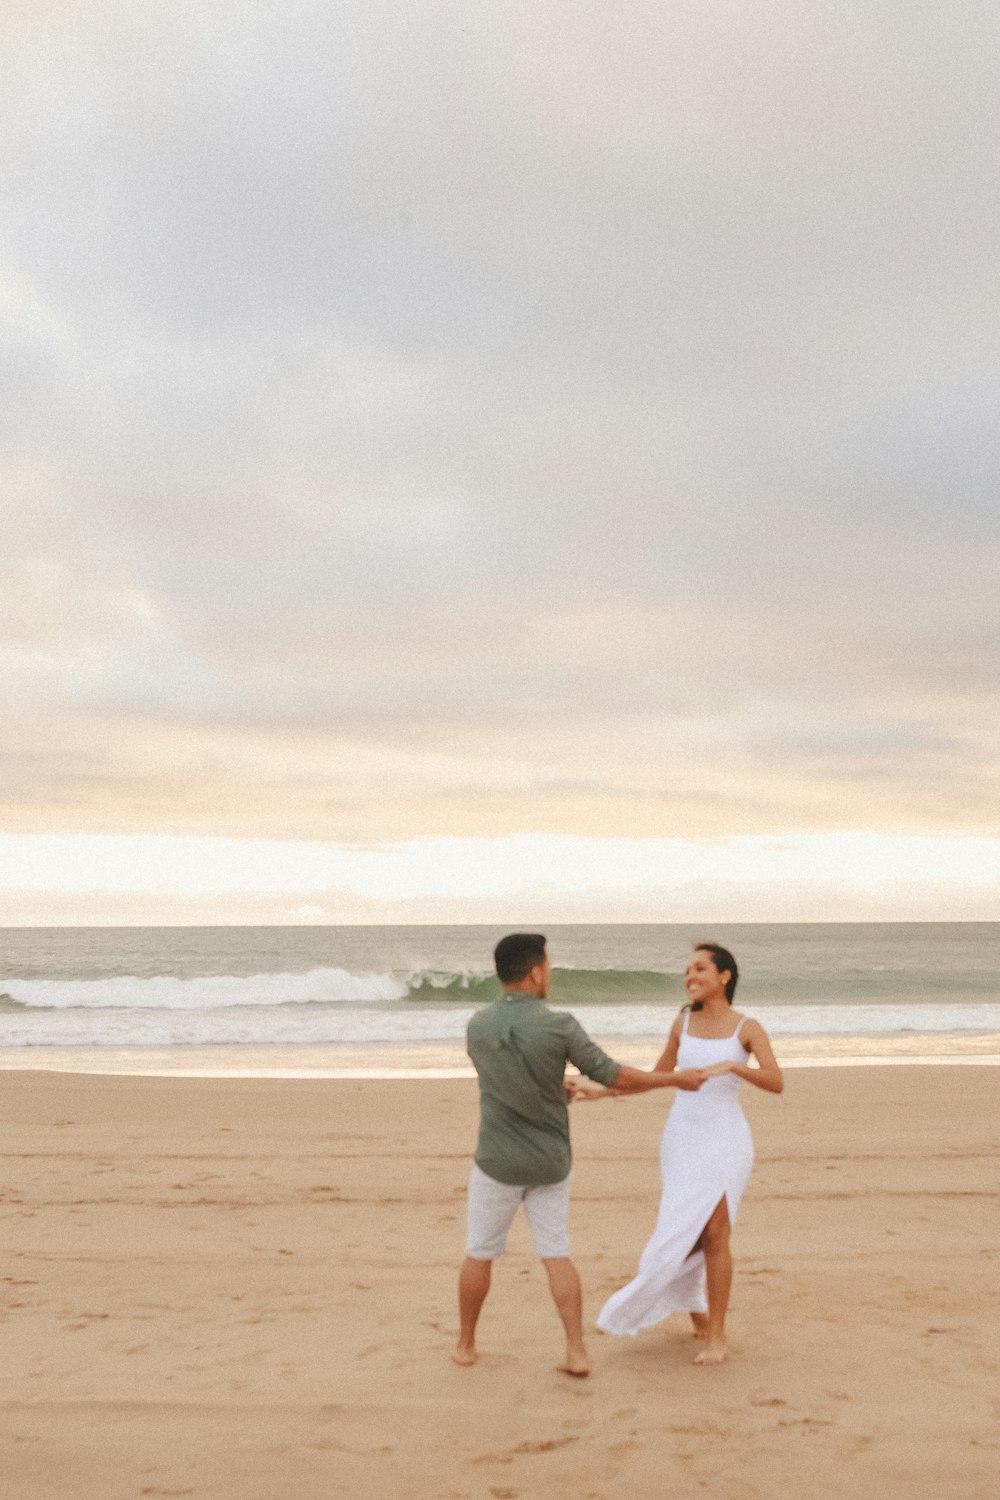 Un homme et une femme se tenant la main sur une plage